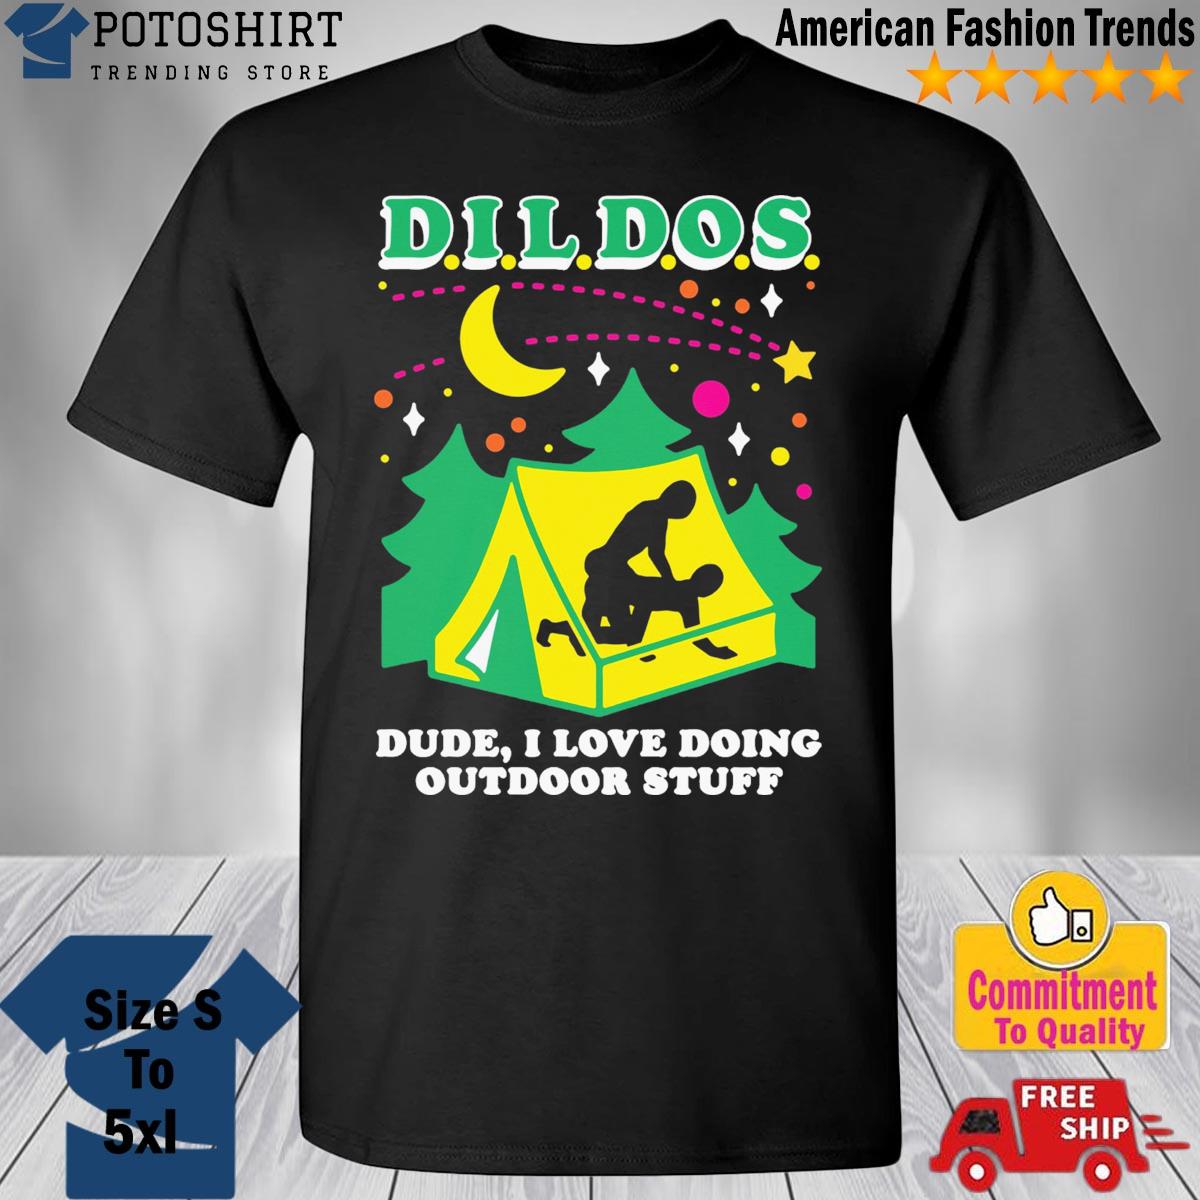 D.I.L.D.O.S. (Dude I love doing outdoor stuff) shirt